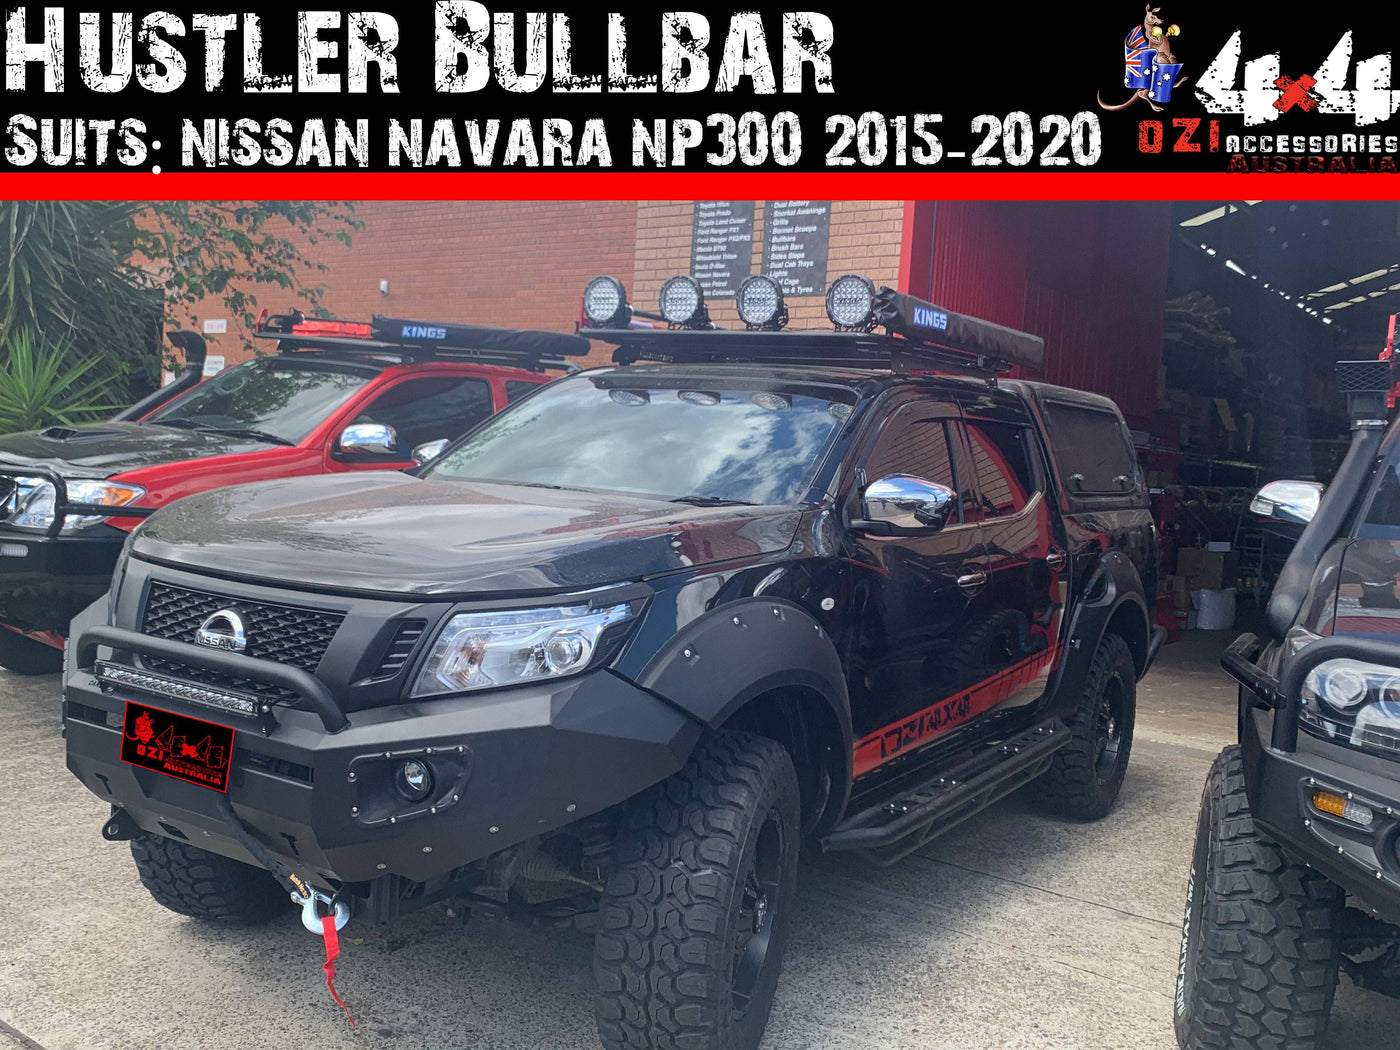 Hustler Bullbar Suits Nissan Navara NP300 2015-2020